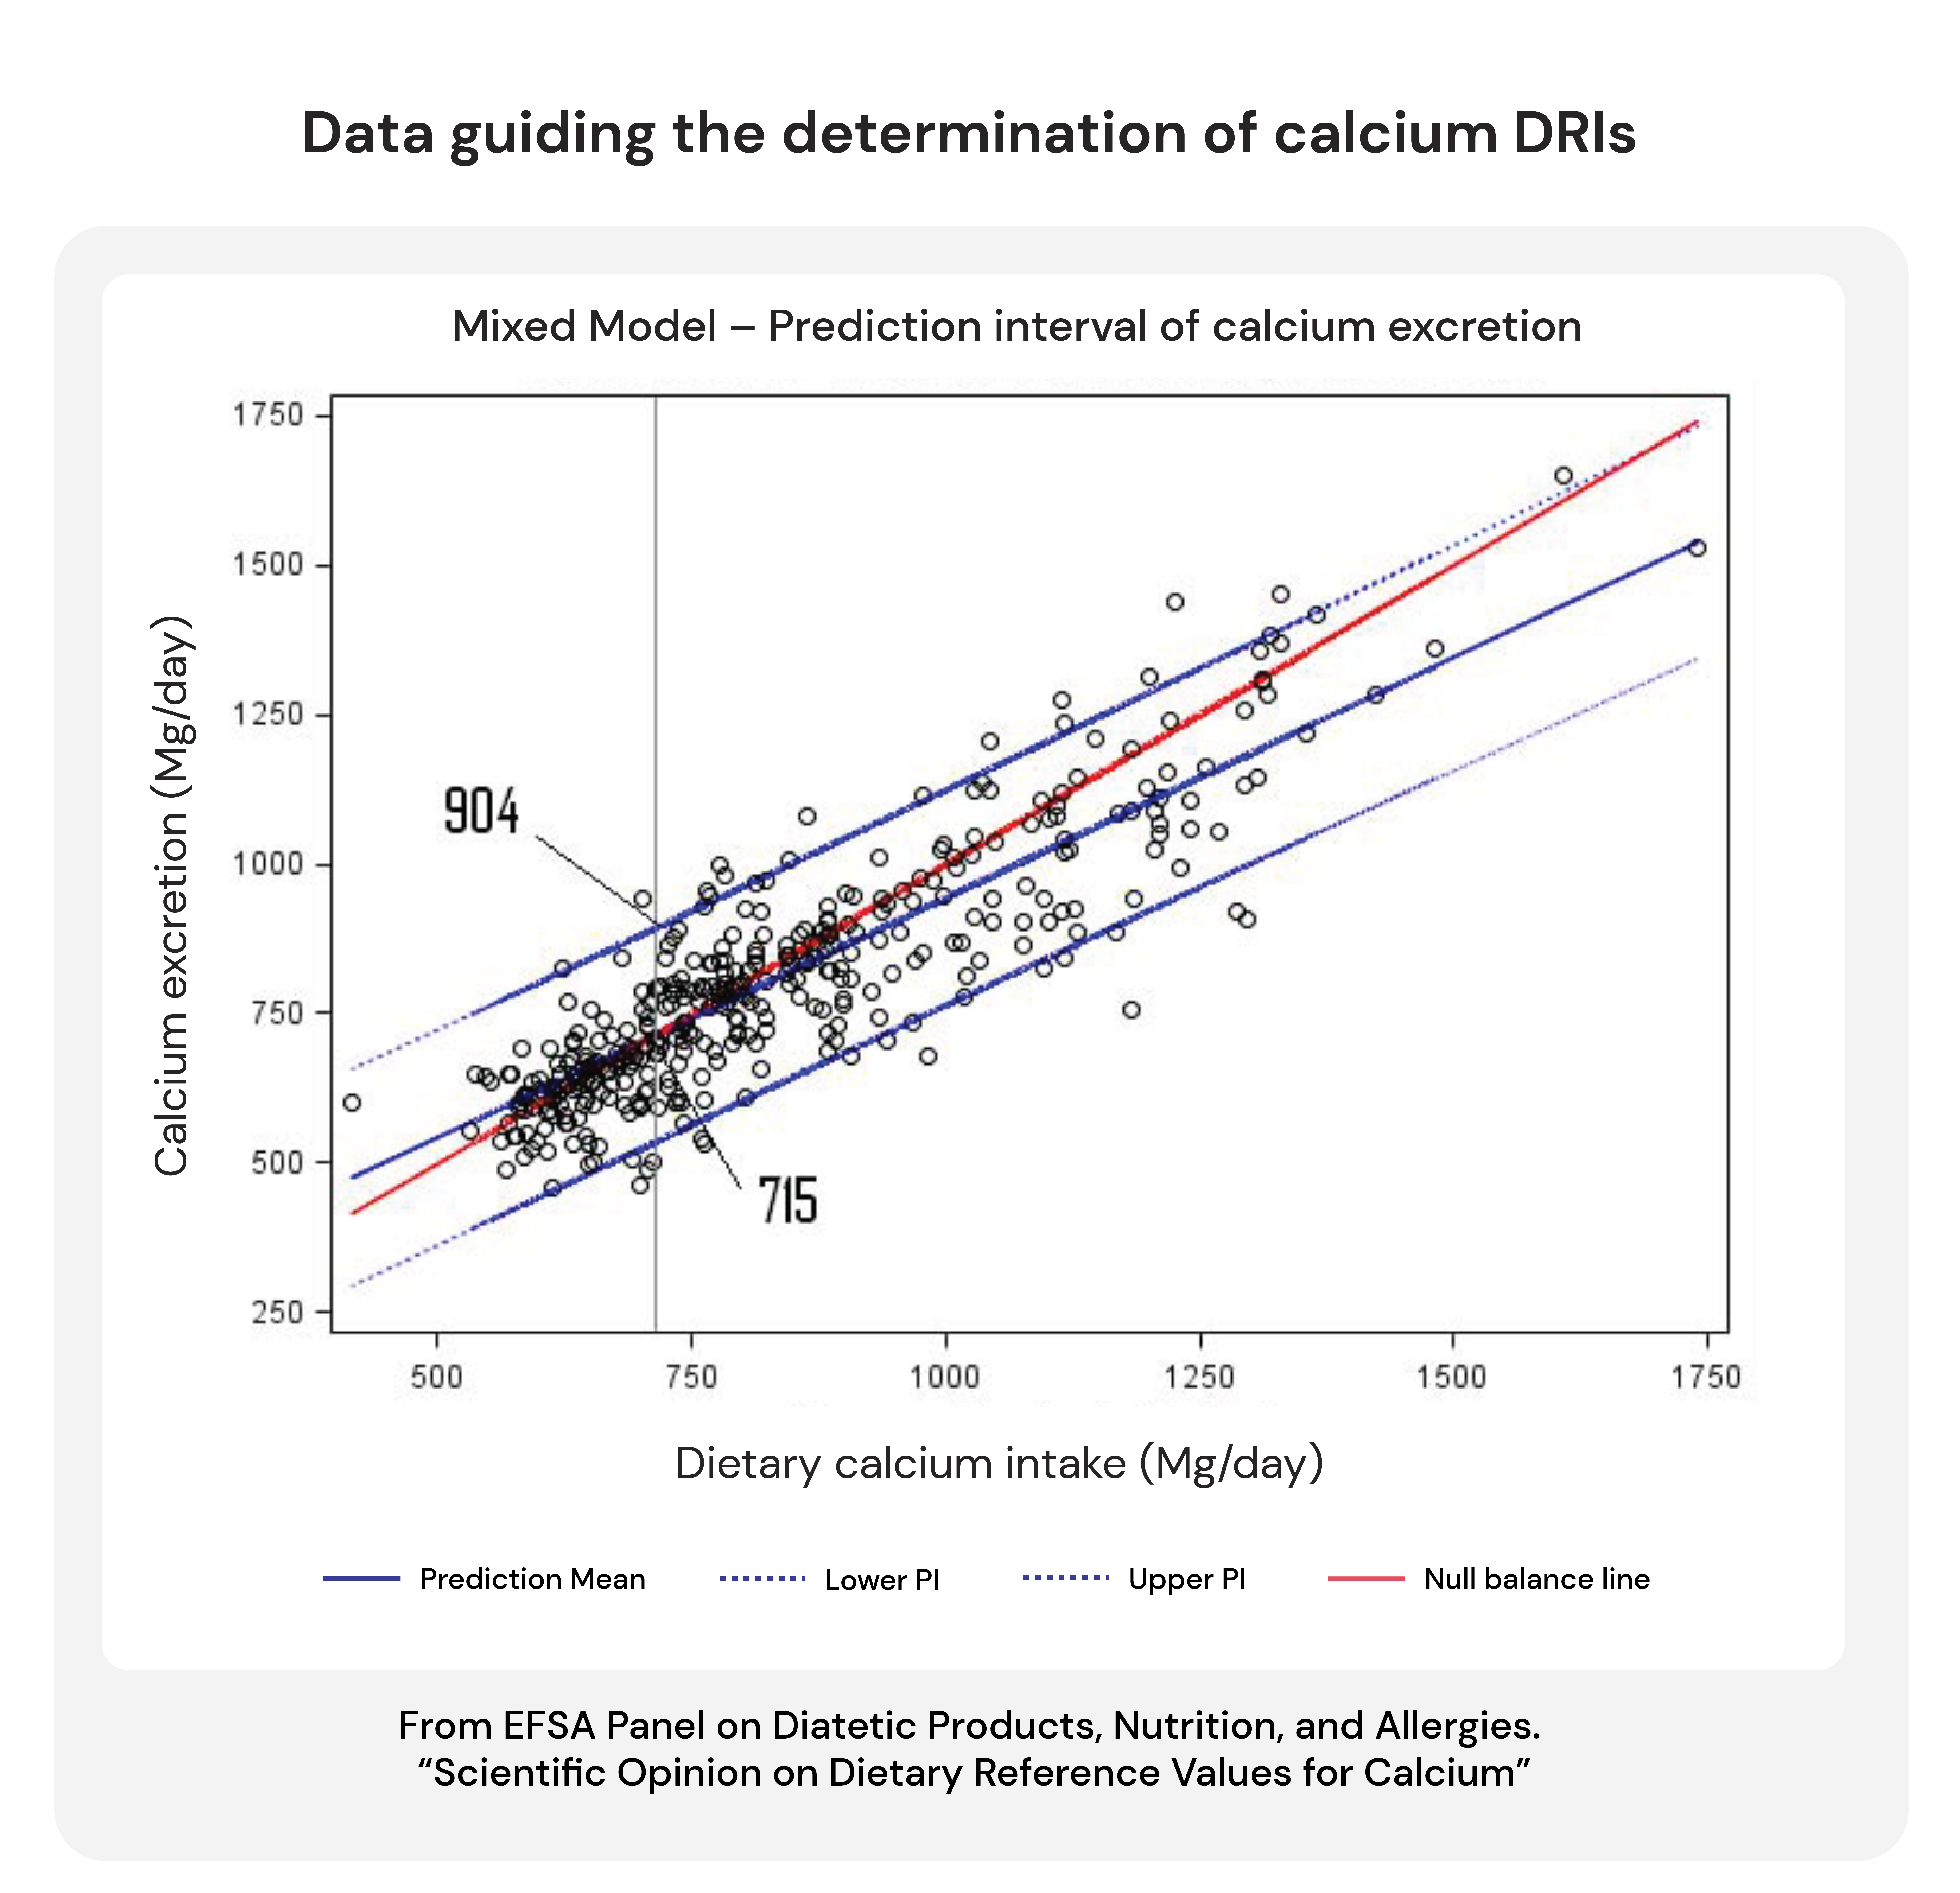 data guiding the determination of calcium DRIs